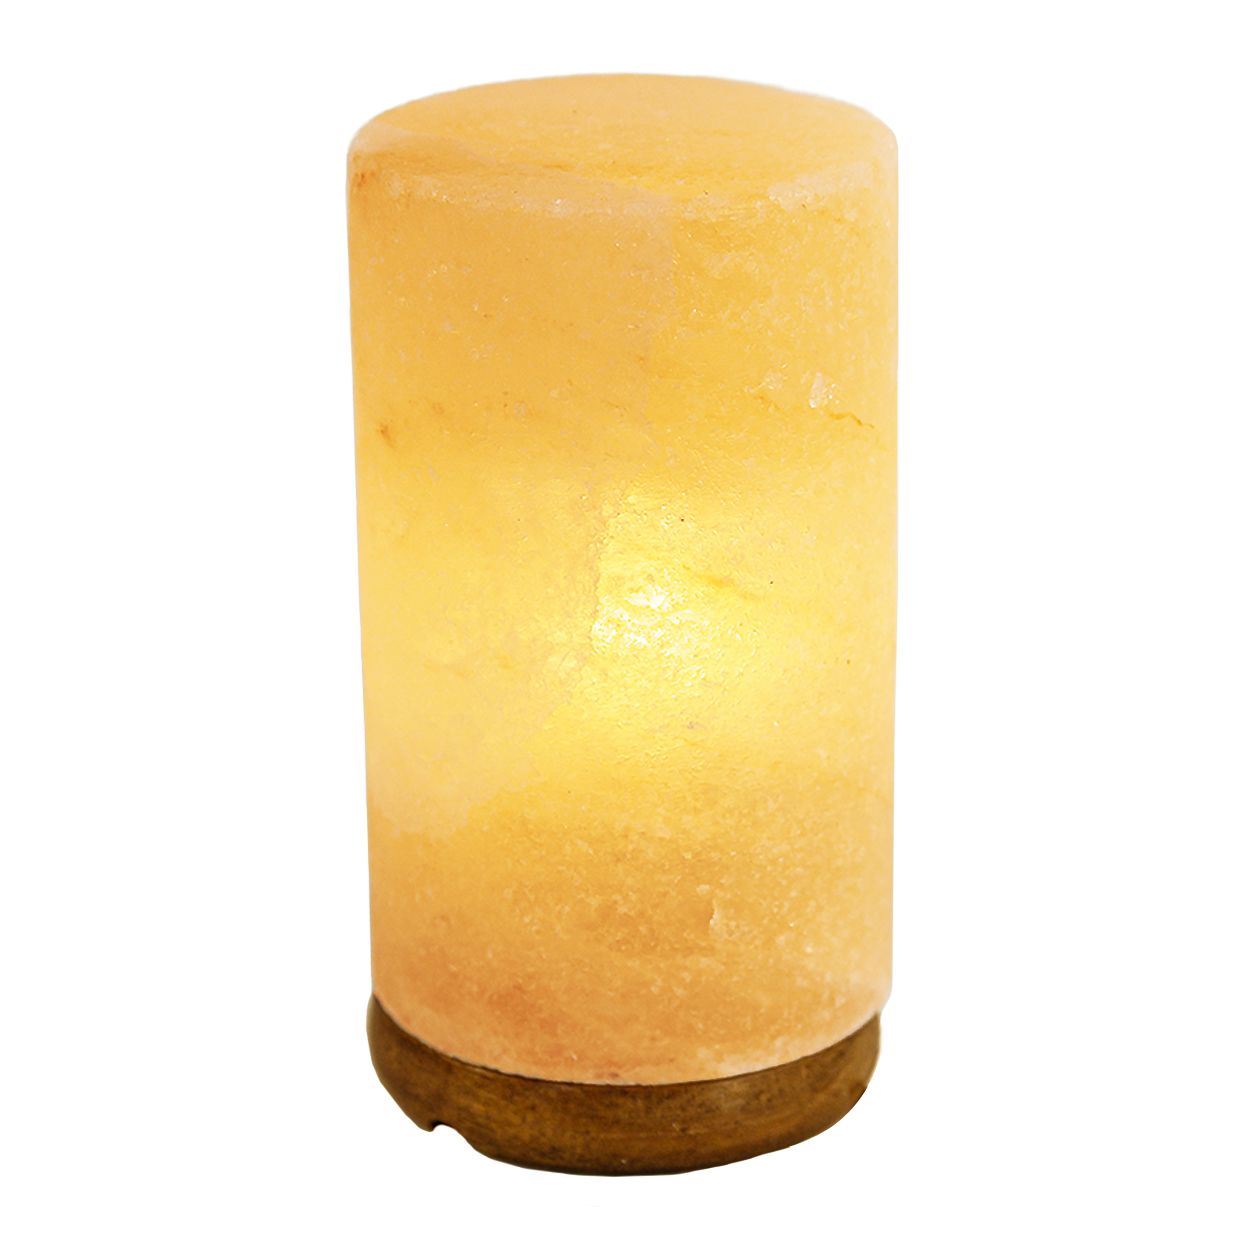 Картинка Соляная лампа SUPRA SHL-1011 по разумной цене купить в интернет магазине mall.su